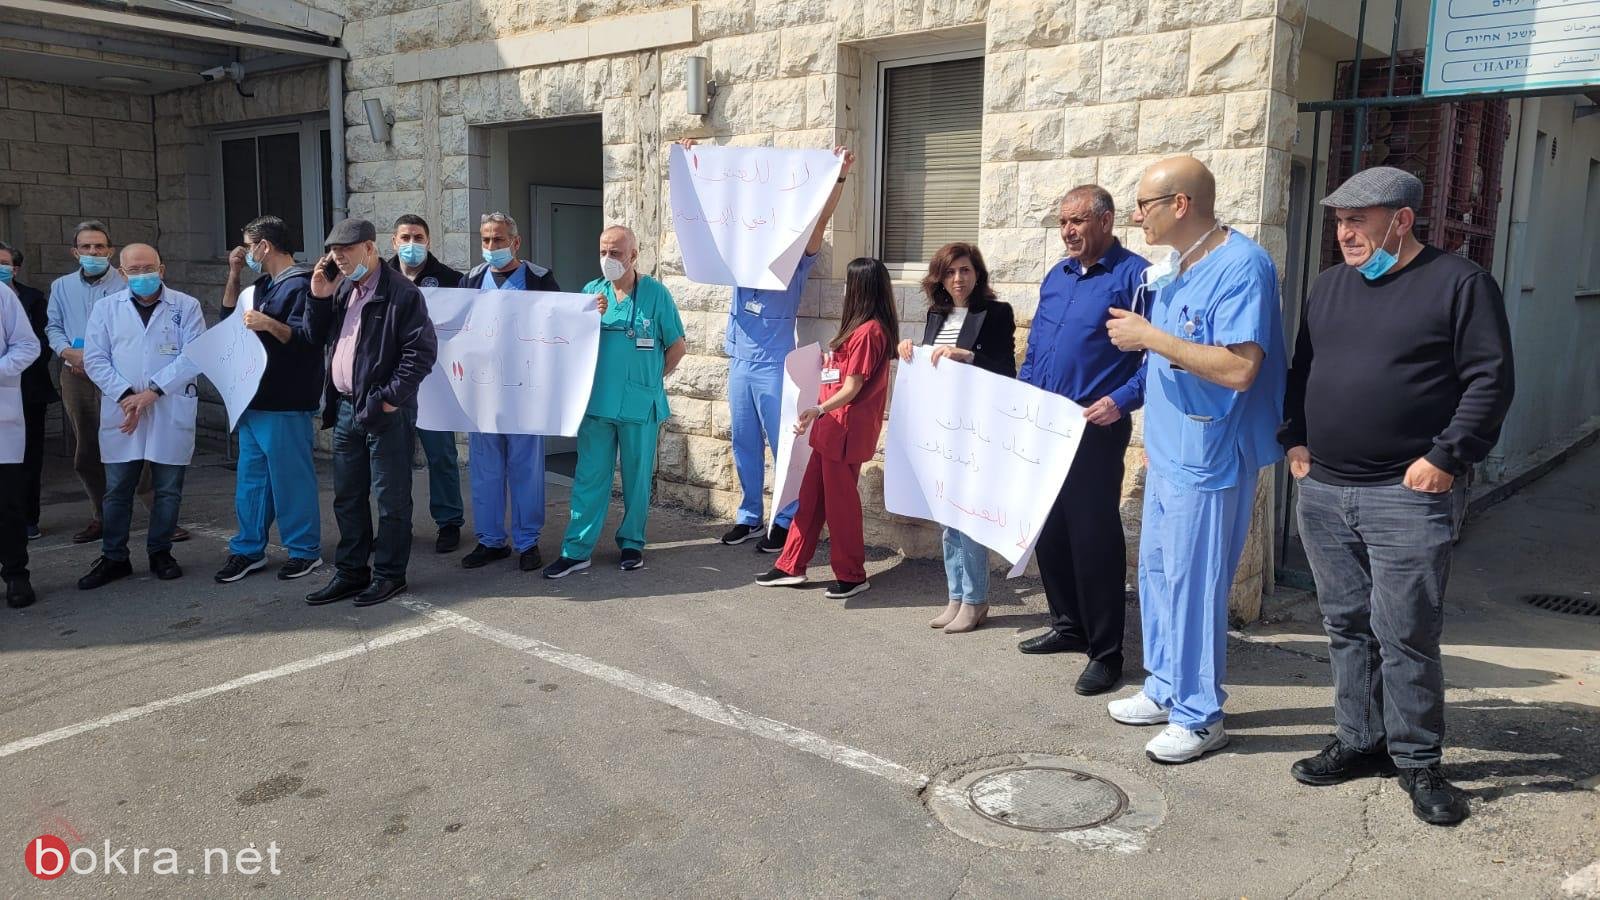 وقفة احتجاجية بعد الإعتداء على ممرض في مستشفى الناصرة-الإنجليزي-1